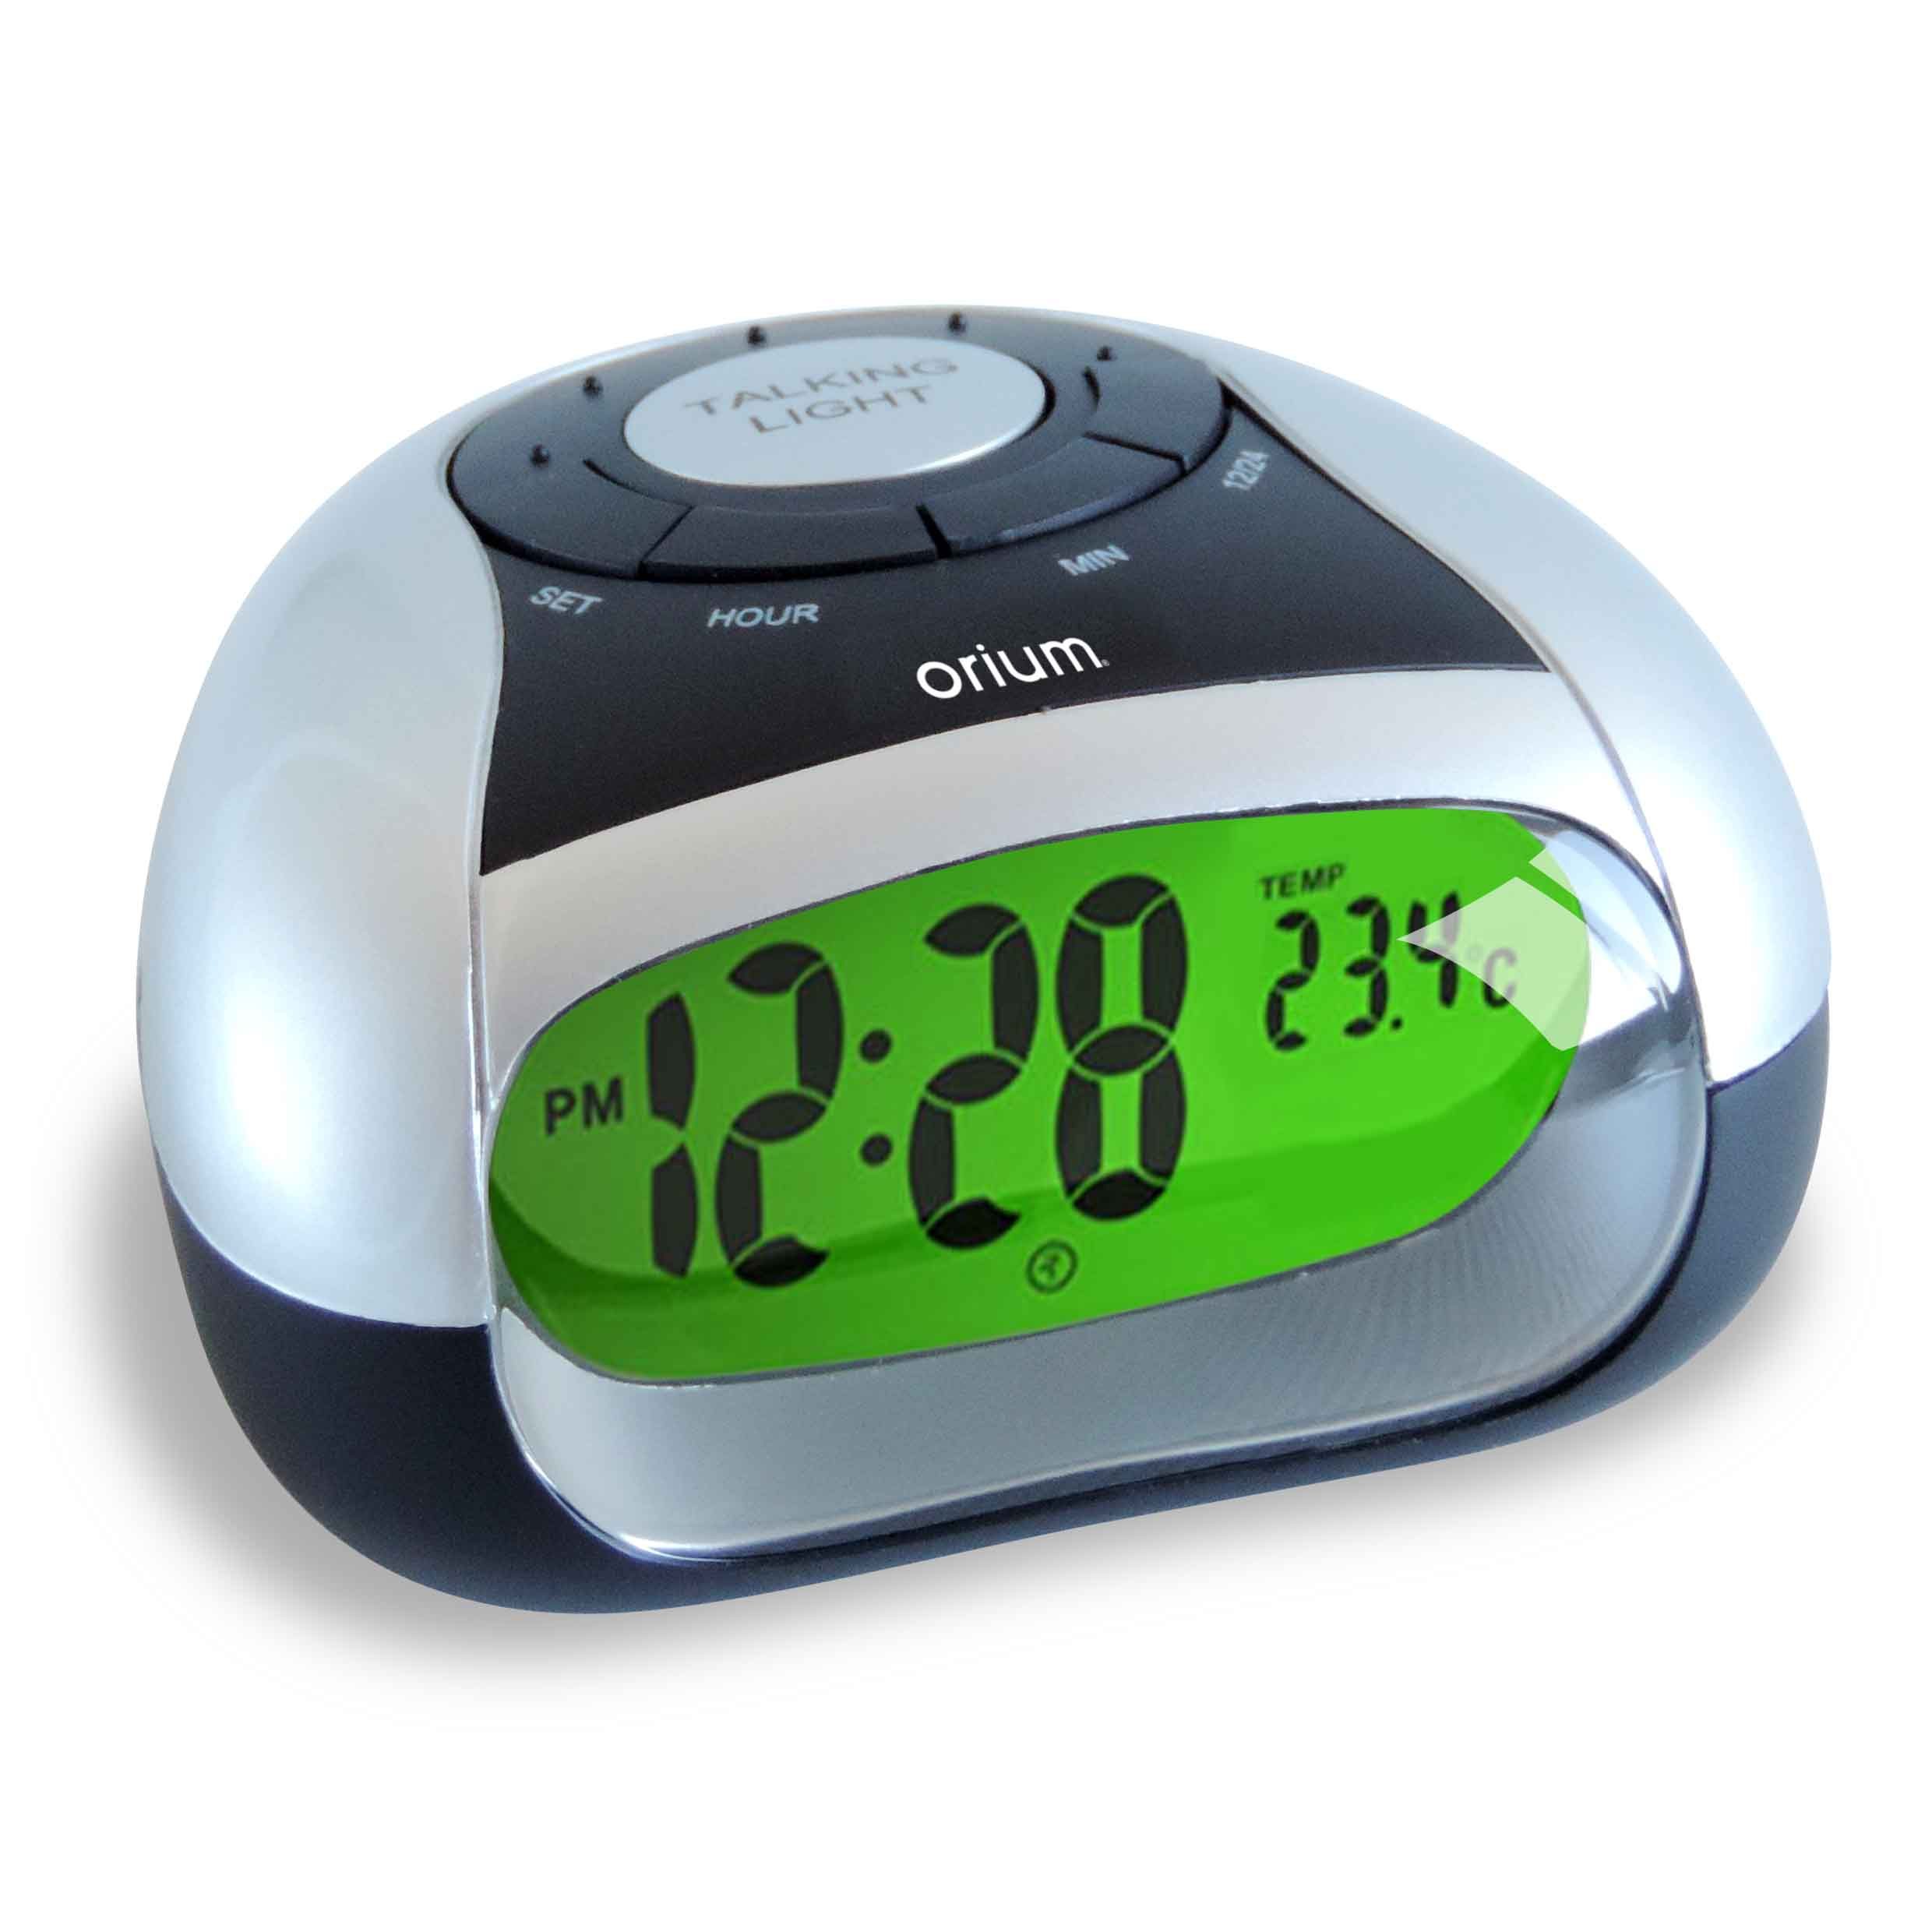 Хорошие говорящие часы. Говорящие часы с термометром. Говорящие часы с будильником и термометром. Reveil Alarm Clock. Часы VST 770t-1.